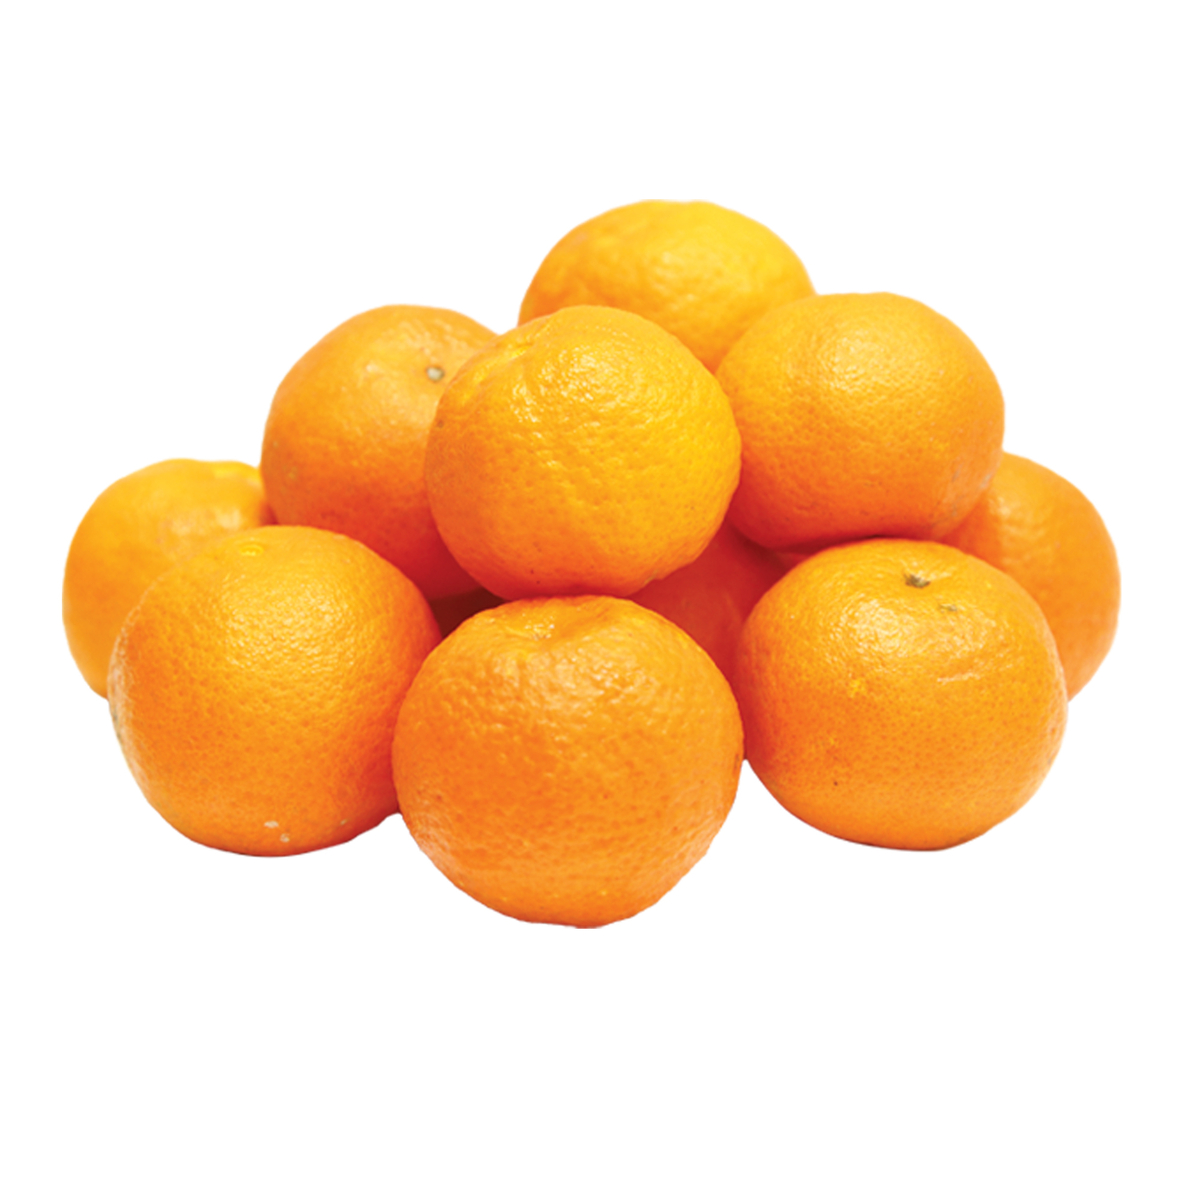 اشتري قم بشراء مندرين موركوت مصري 1 كجم Online at Best Price من الموقع - من لولو هايبر ماركت Citrus Fruits في الكويت